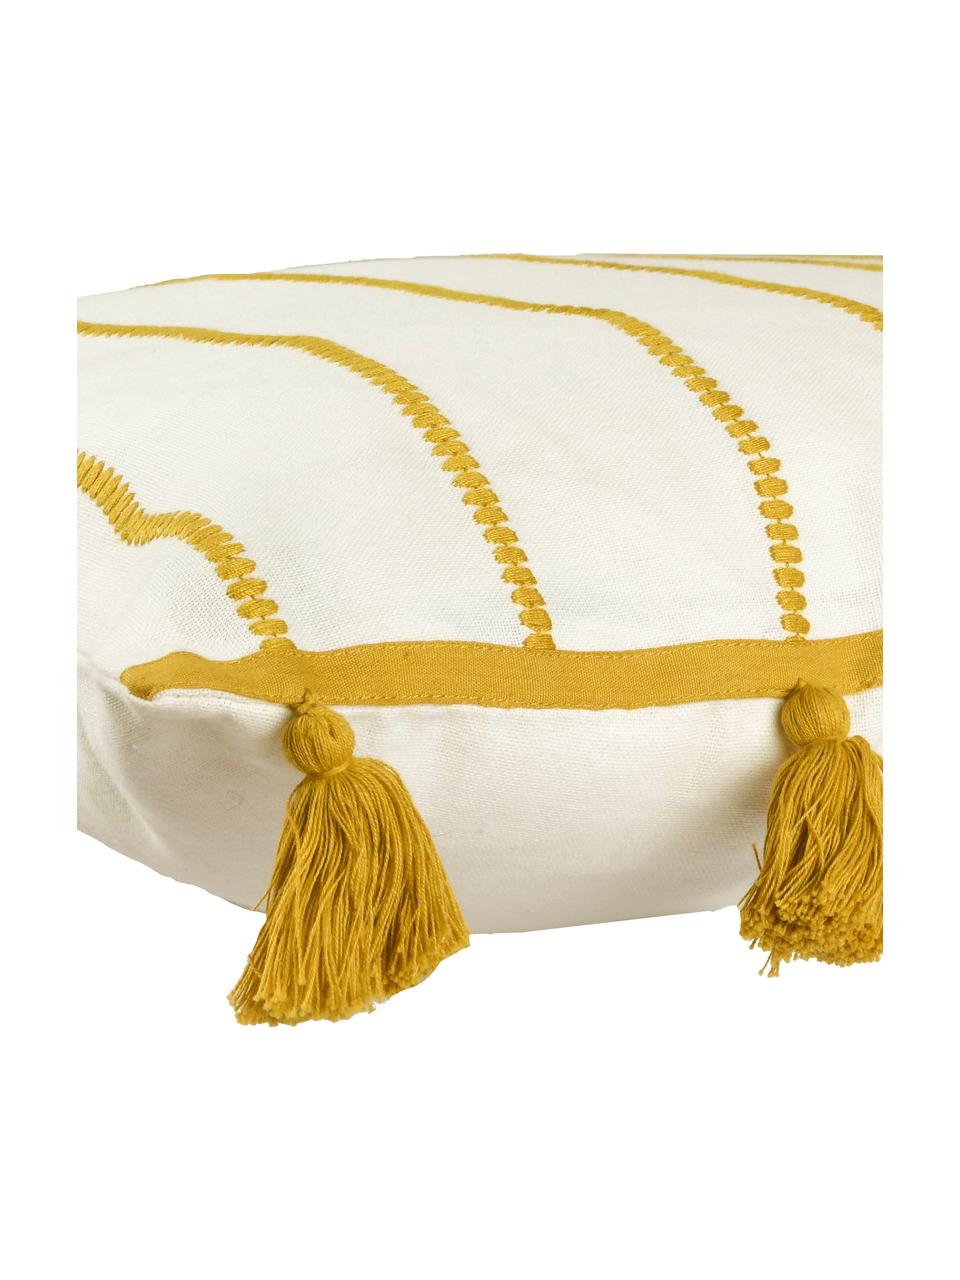 Kissenhülle Blanket mit Quasten, 100% Baumwolle, Gelb, Weiss, 50 x 50 cm